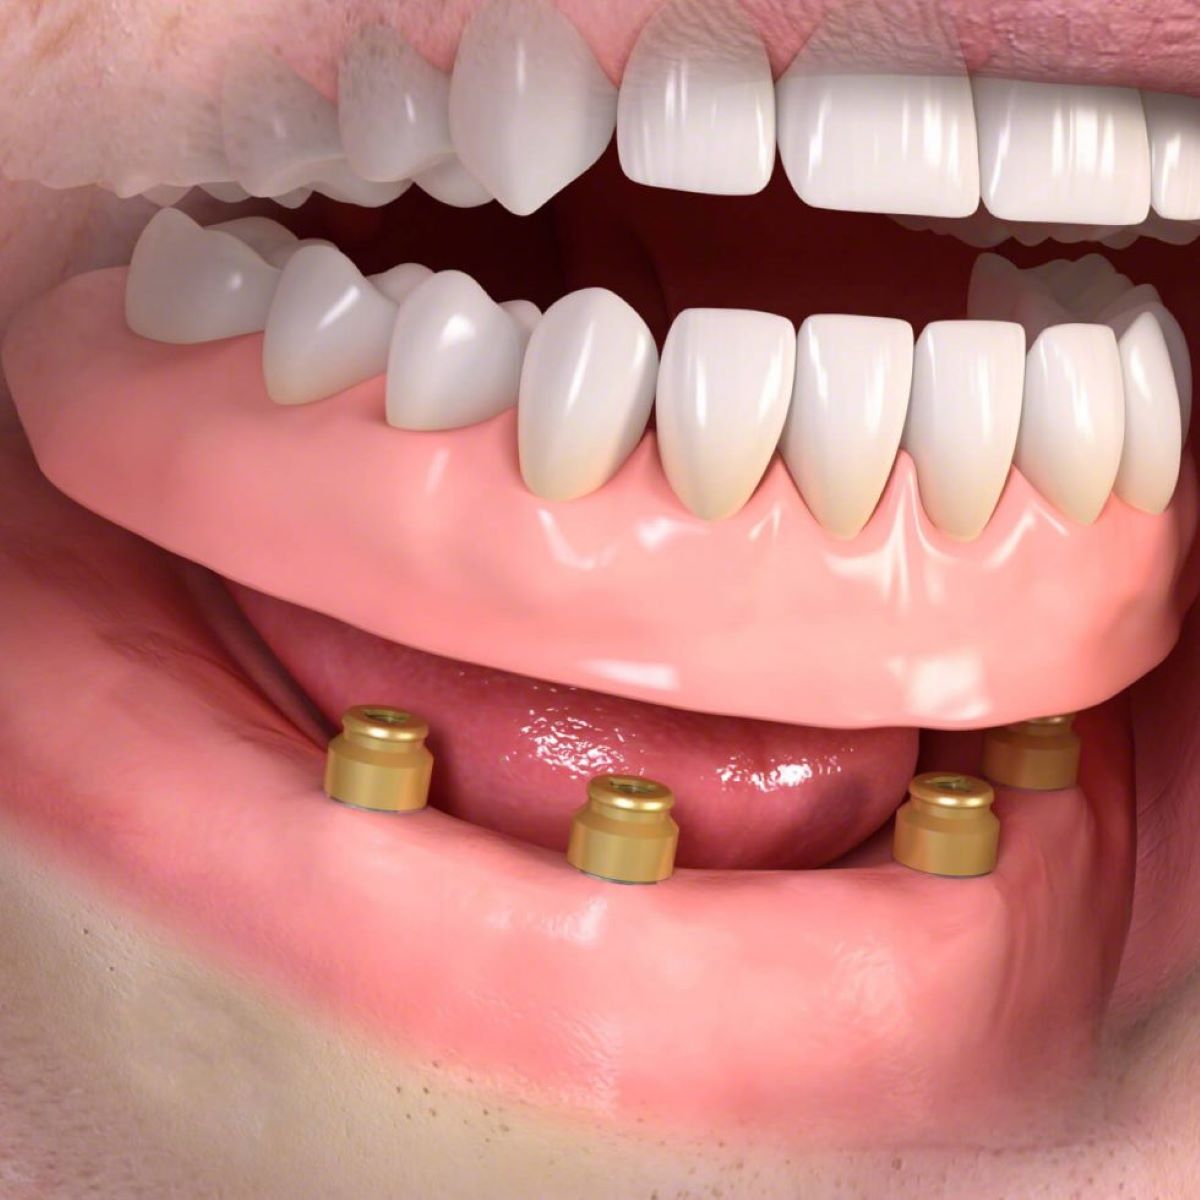 a szájpadlás nélküli fogsor fogimplantátumok beültetésével valósítható meg